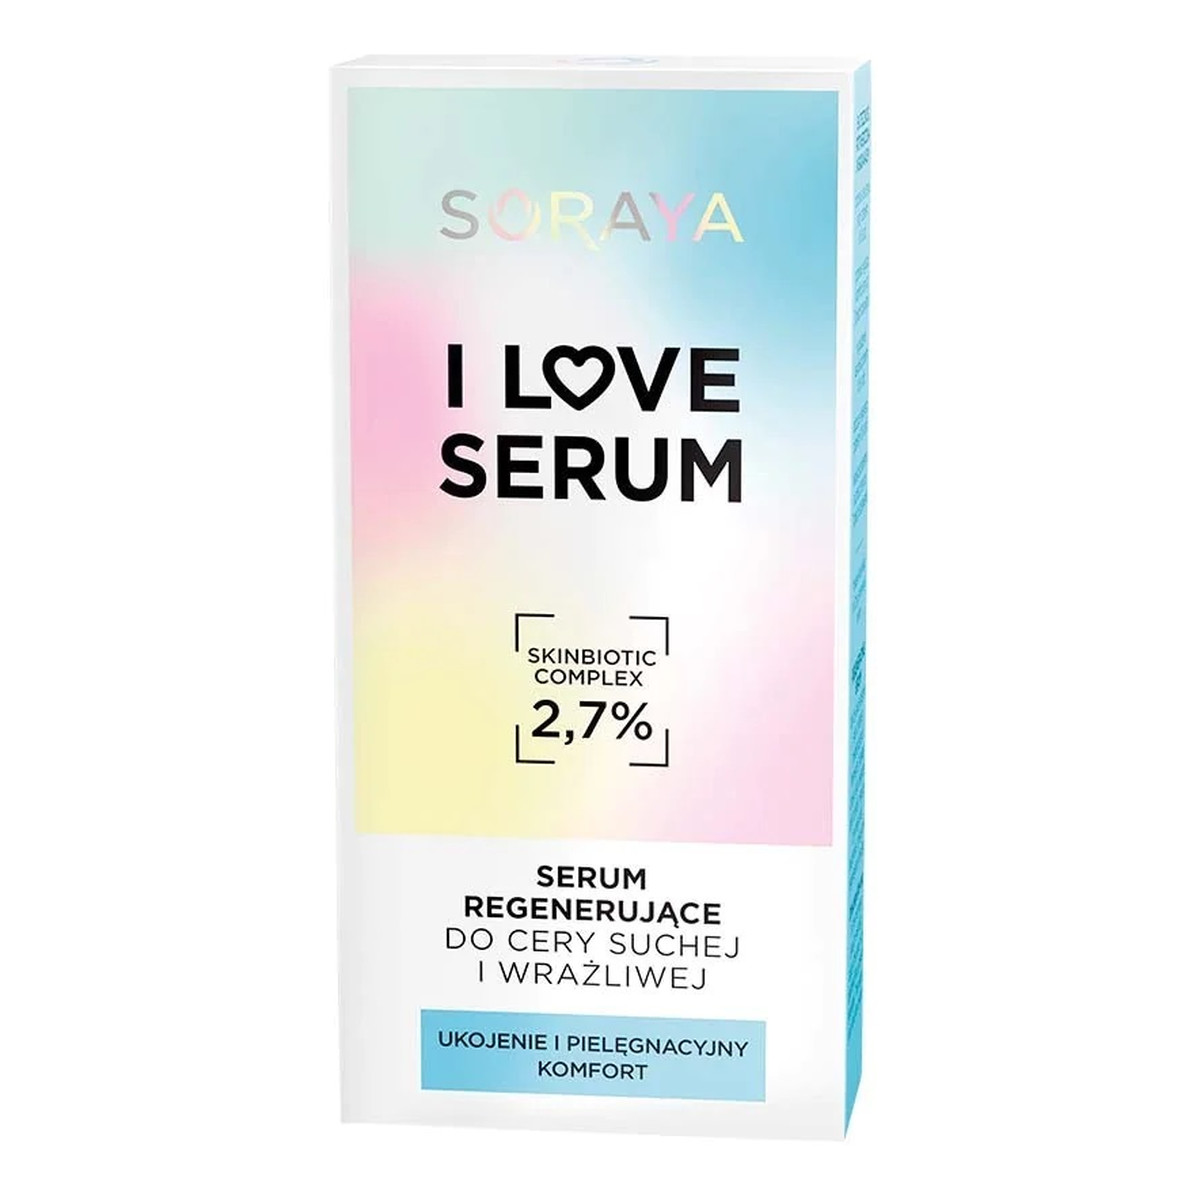 Soraya I Love Serum Serum regenerujące do cery suchej i wrażliwej 30ml